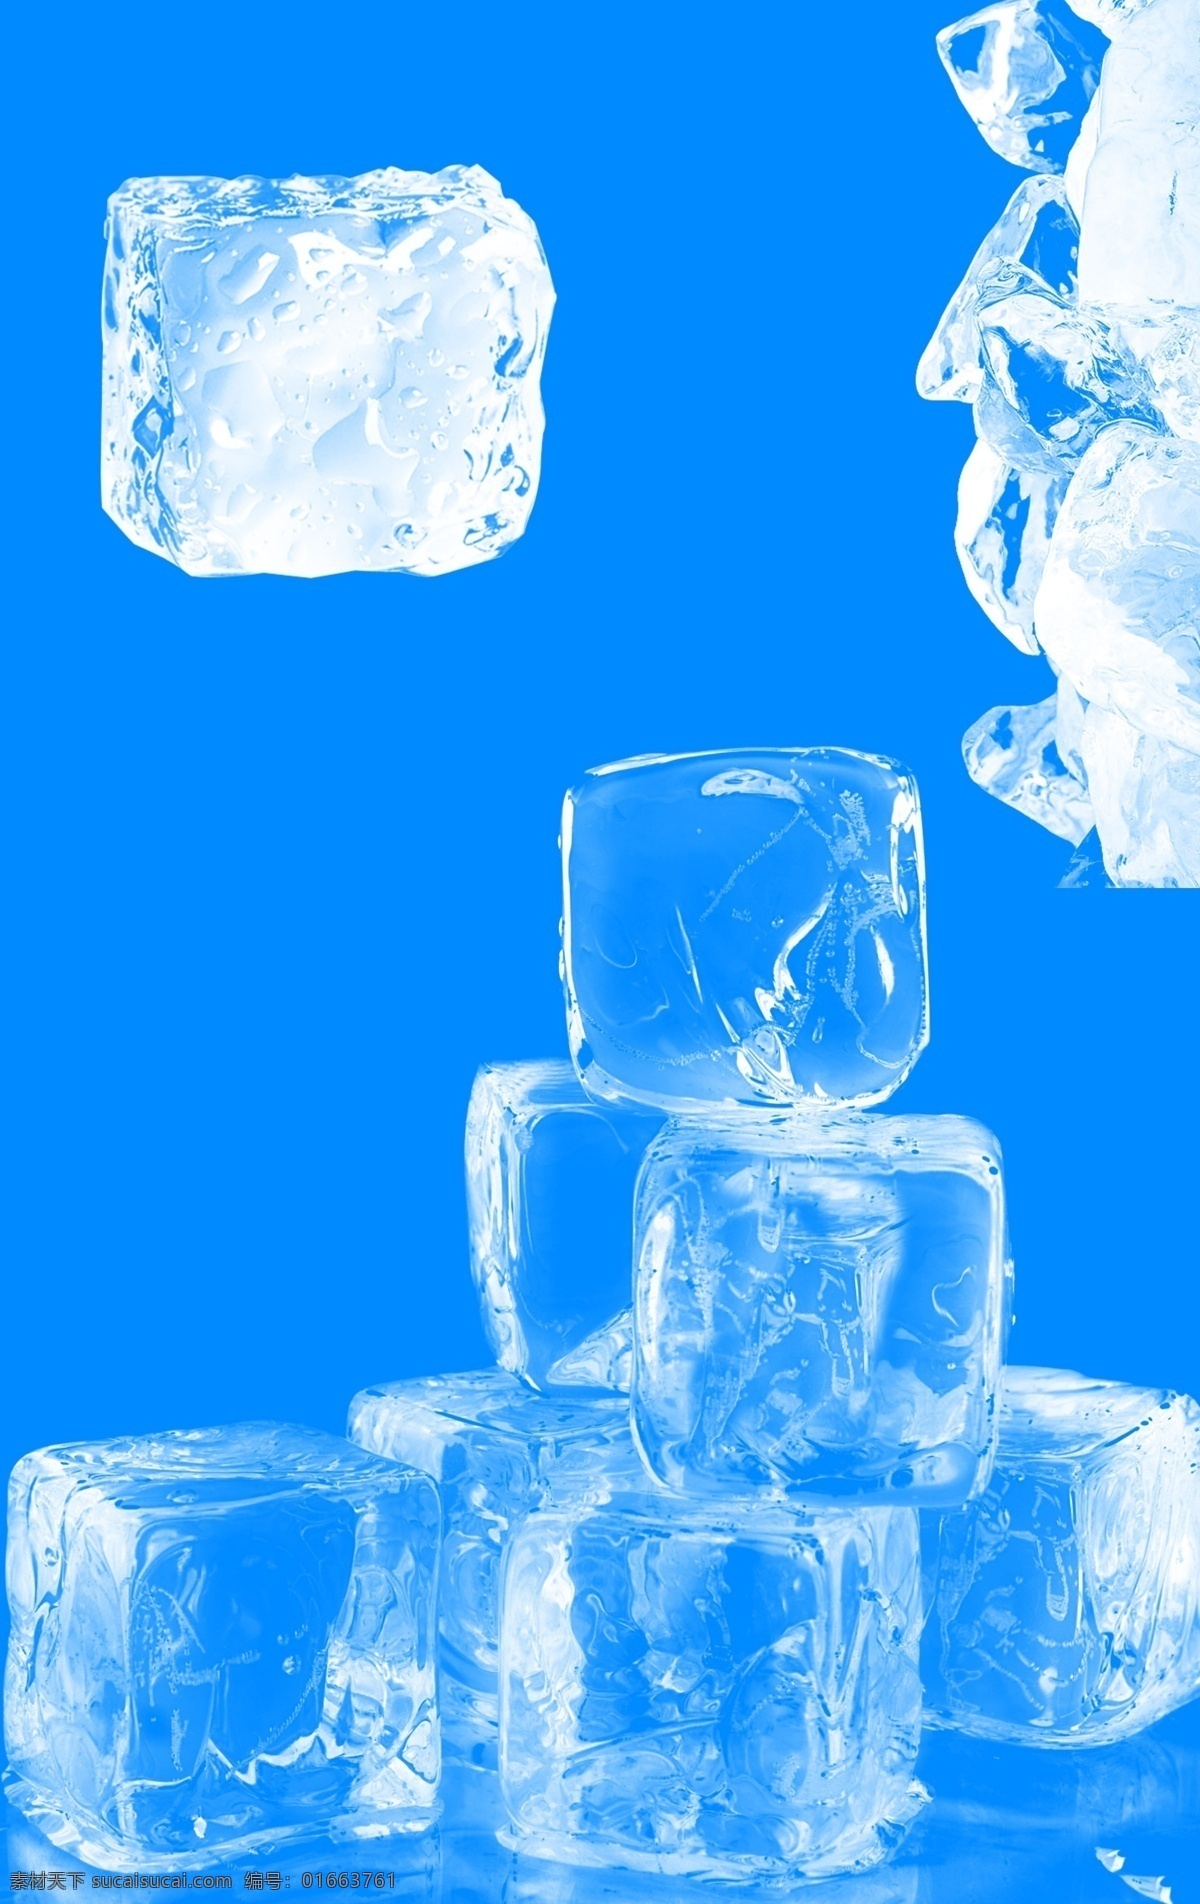 冰块素材 冰块图片 夏季冰爽 冰块 凉爽冰块 冰块元素 夏季元素 蓝色冰块图片